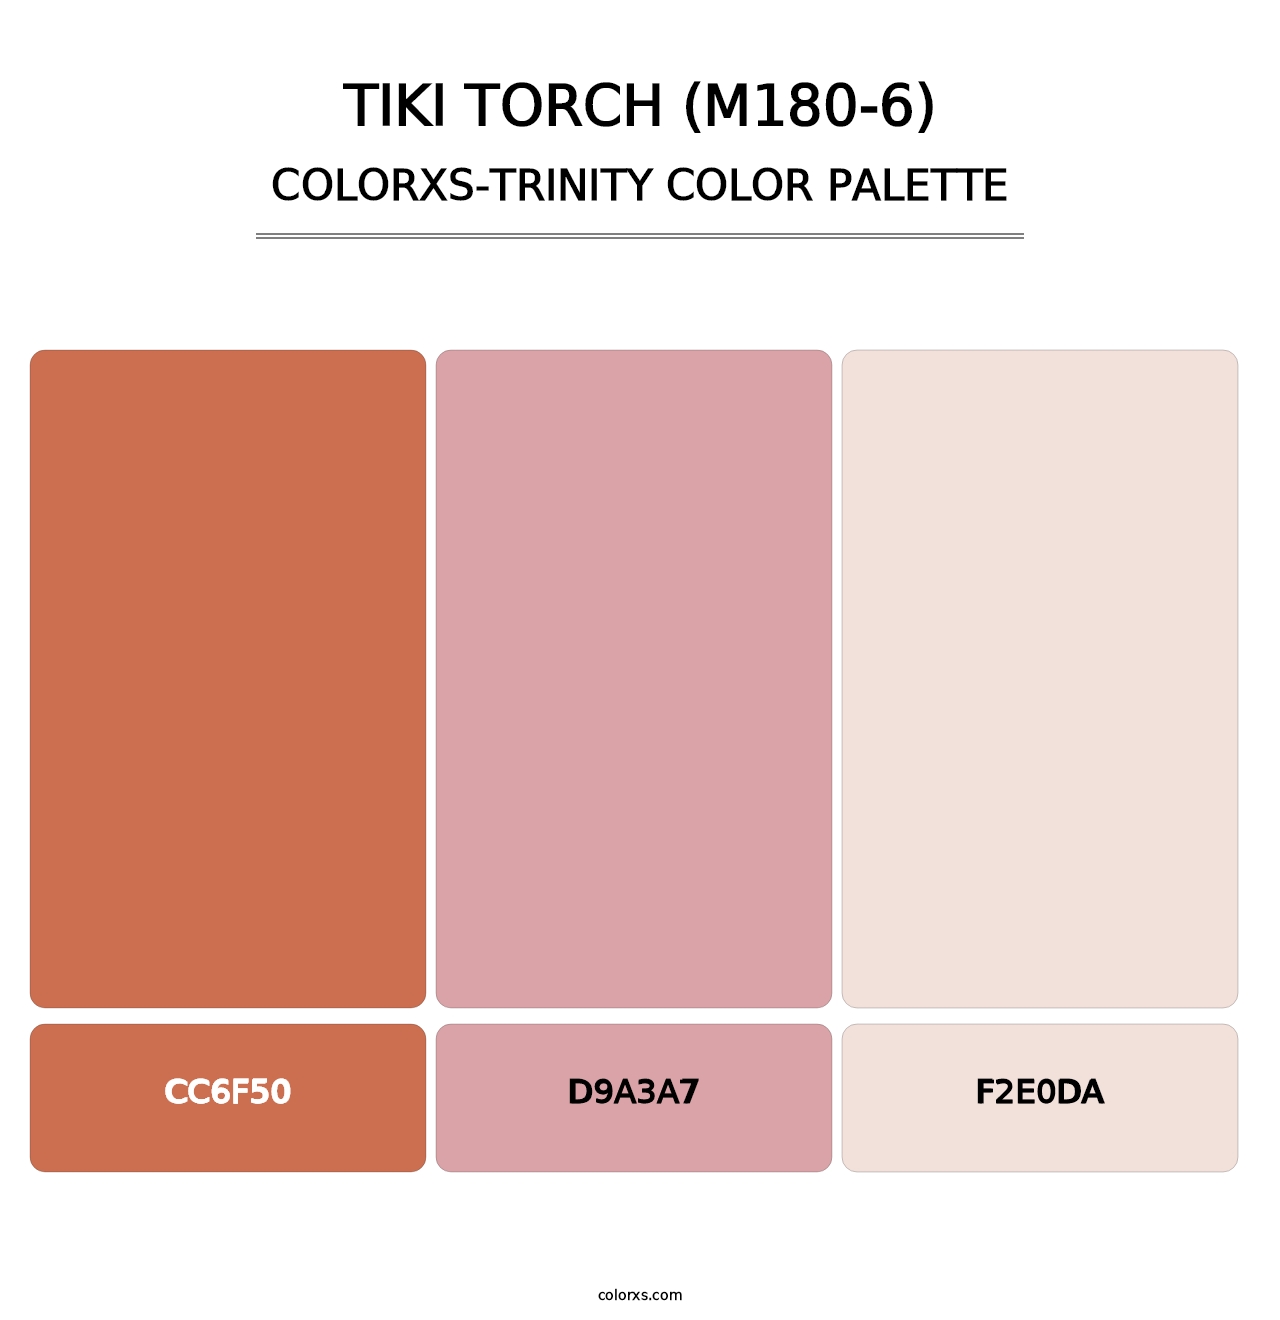 Tiki Torch (M180-6) - Colorxs Trinity Palette